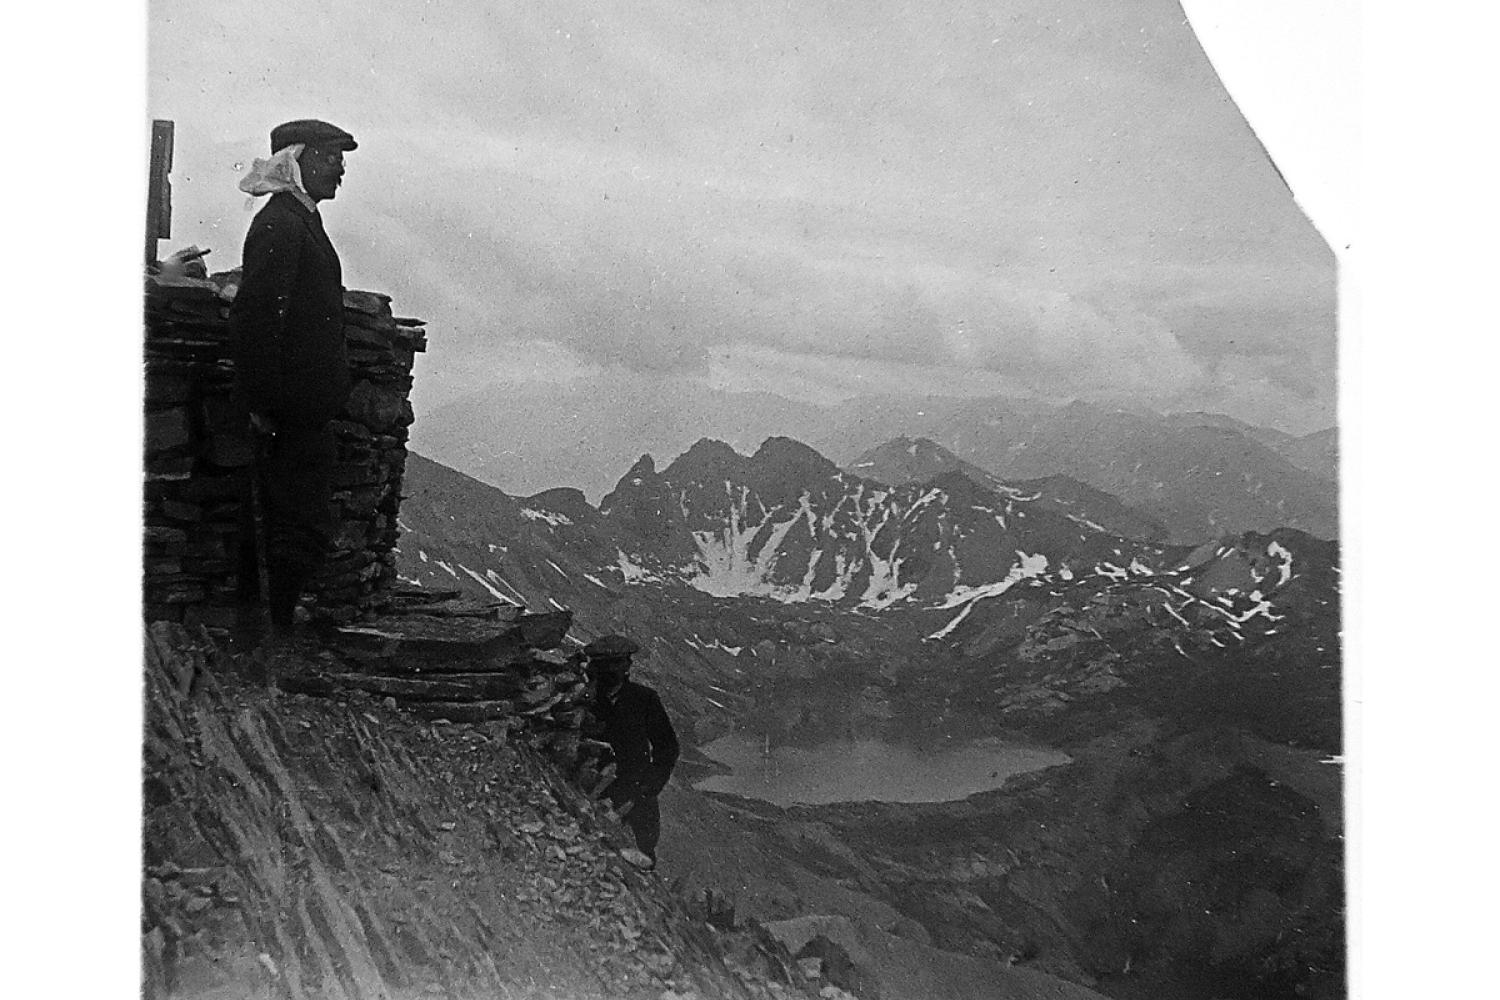 Photo prise depuis le sommet du Mont Pelat – 21 août 1912 © Marius Pierre Honnorat